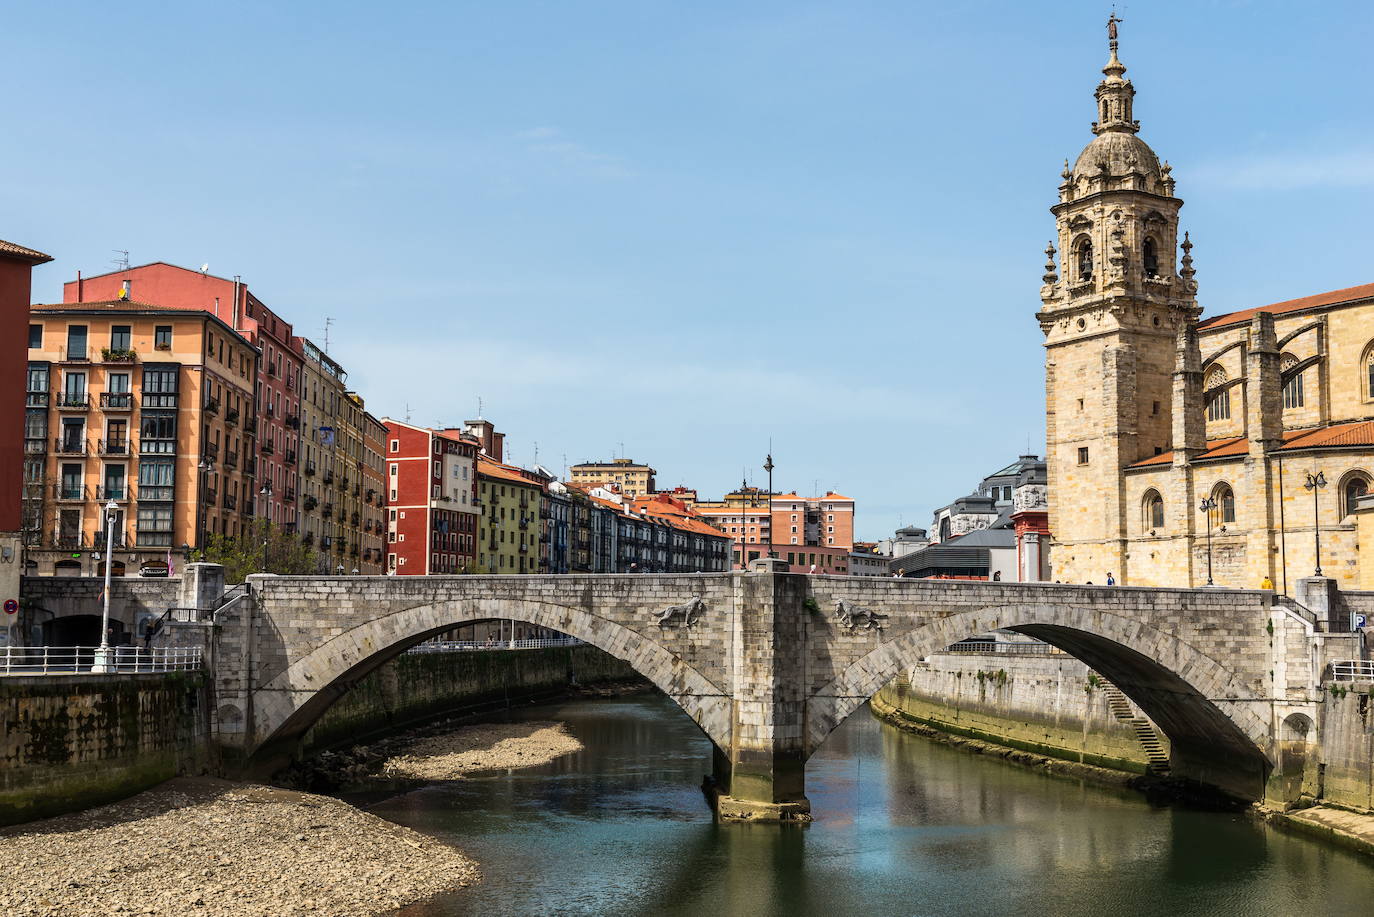 Bilbao (Diseño) | Bilbao ha experimentado grandes transformaciones sociales, culturales y económicas. La creatividad es el eje central en su estrategia de desarrollo y, por ello, se ha convertido en un referente en el ámbito de la arquitectura, el diseño industrial y las nuevas tecnologías. Como Ciudad Creativa prevé promover políticas urbanas orientadas al diseño, albergar eventos internacionales e integrar objetivos en relación con las industrias culturales. Combina a la perfección lo típico de una localidad urbana con señas de identidad propias.